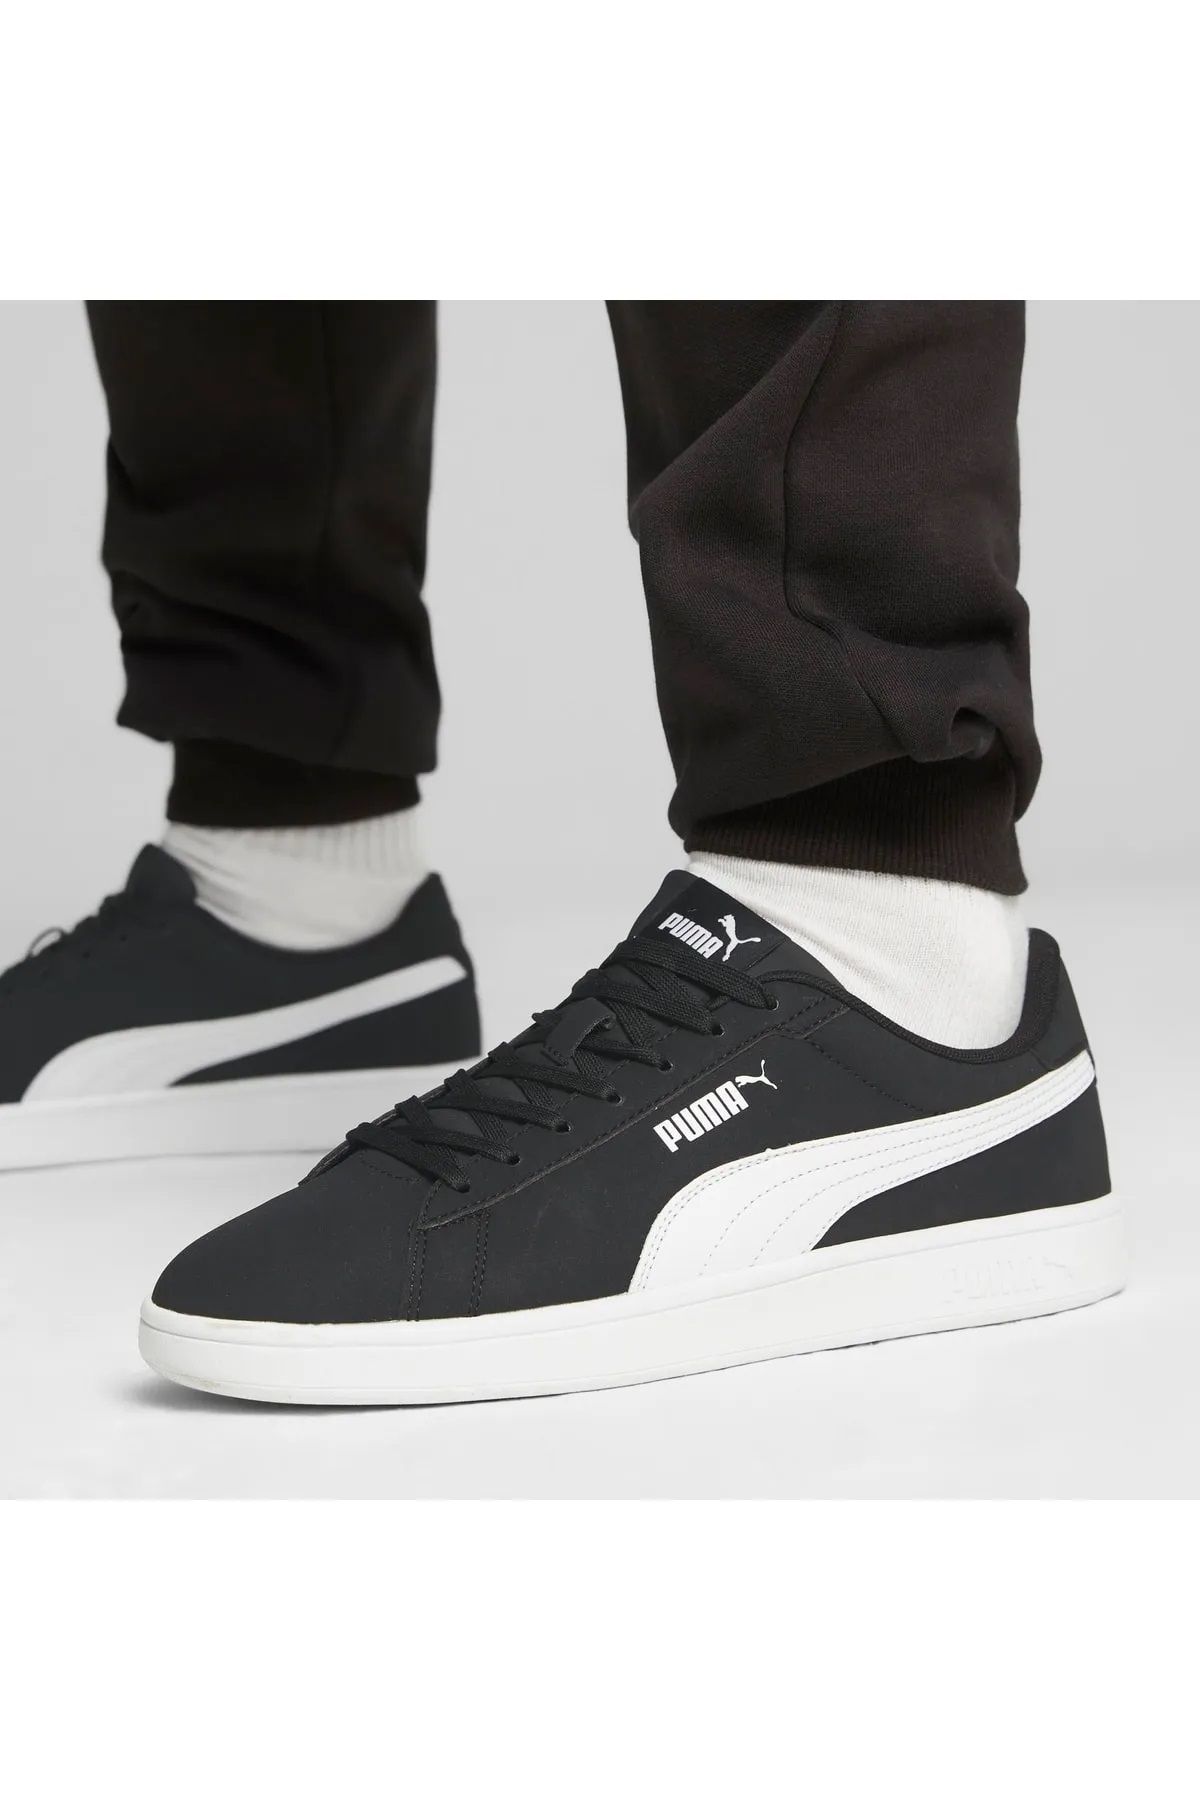 Puma Smash Buck - Siyah Beyaz Sneaker Spor Ayakkabı